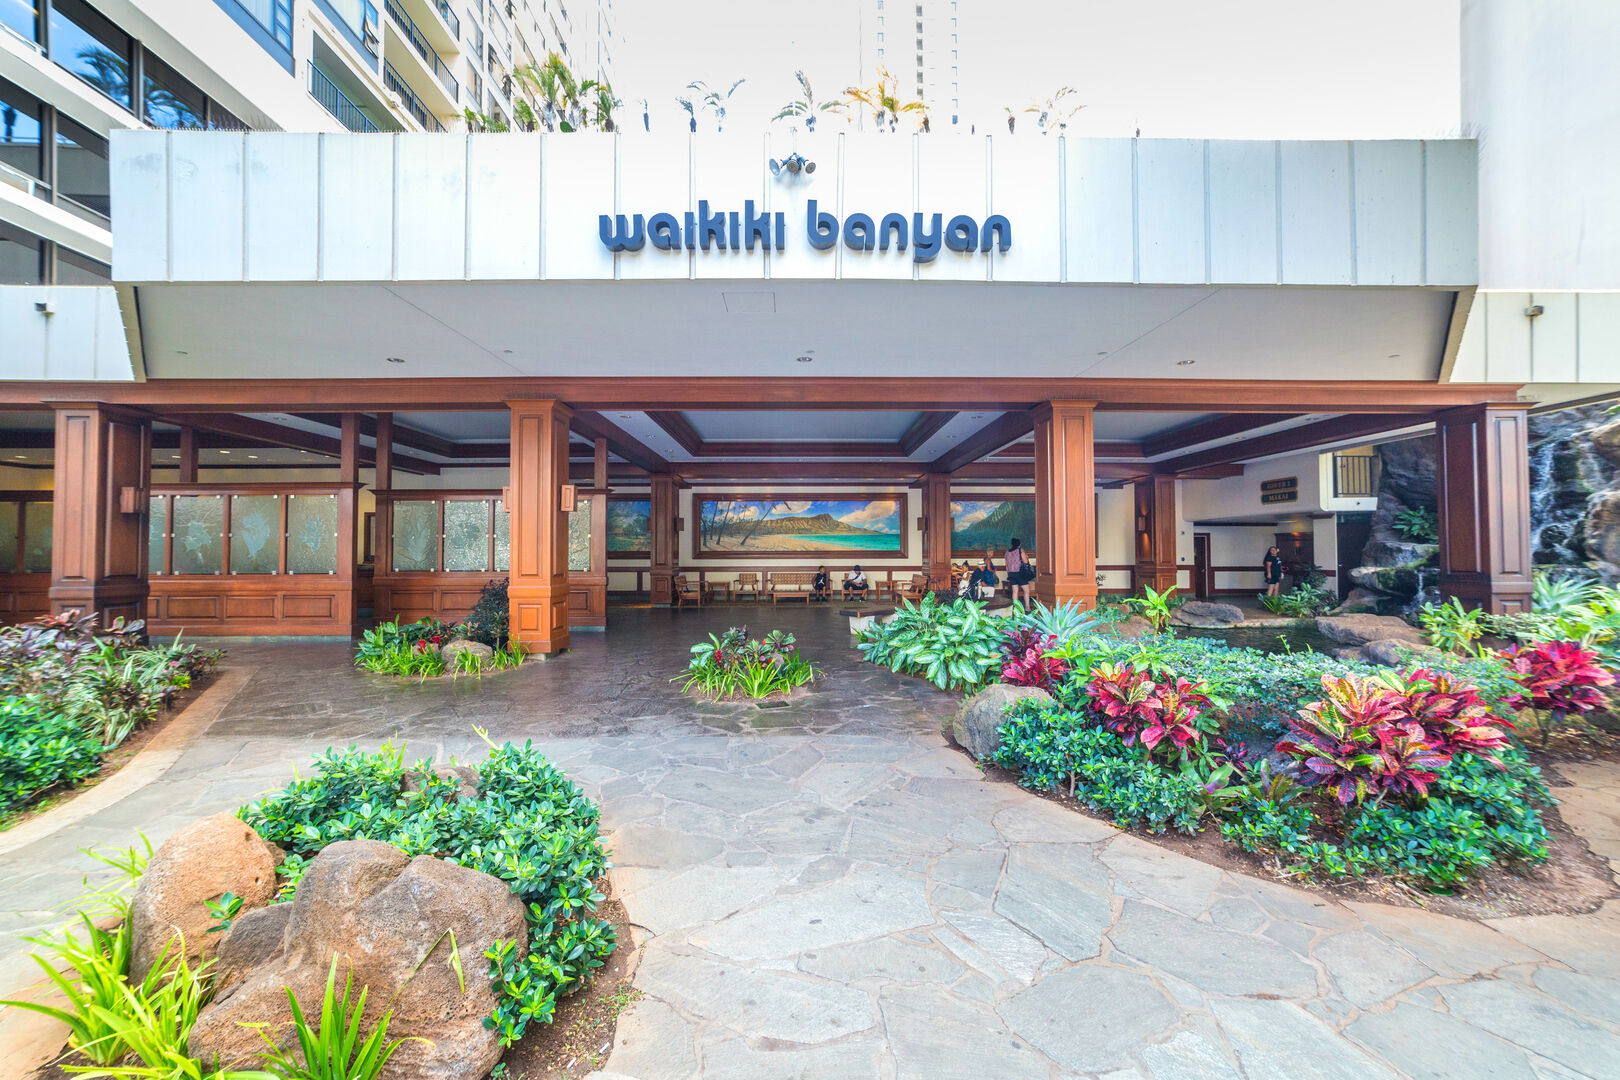 Entrance Waikiki Banyan